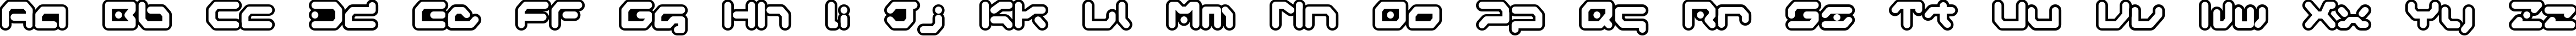 Пример написания английского алфавита шрифтом Gameboy Gamegirl